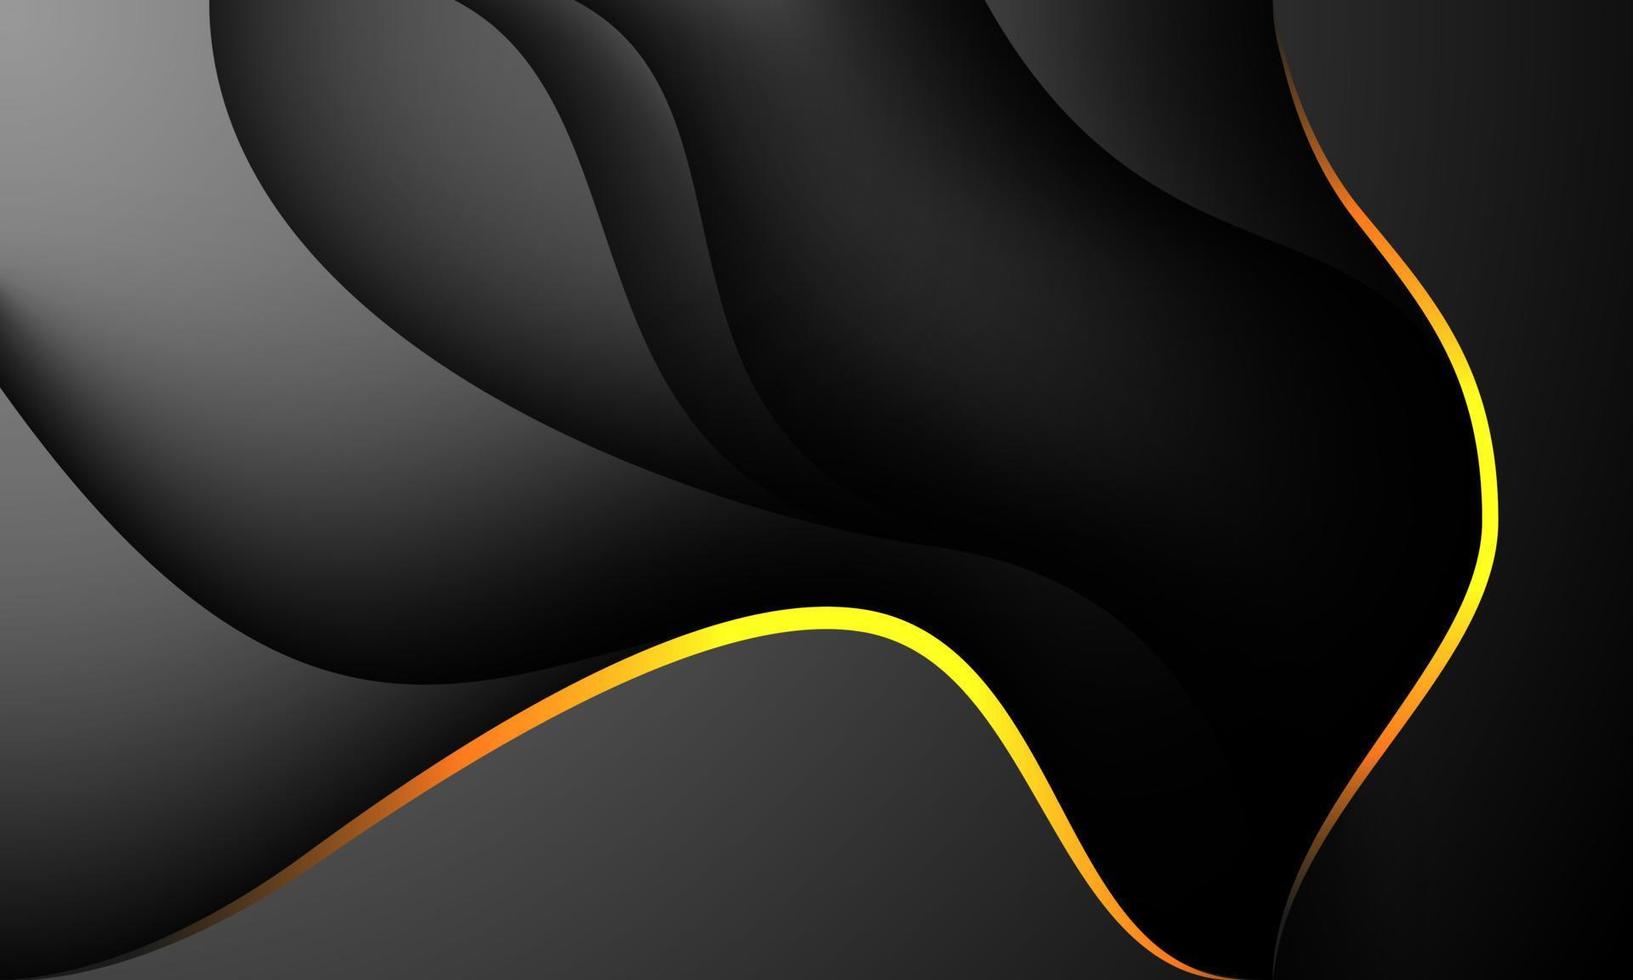 abstracte goud zwarte schaduwcurve overlap op grijs metalen ontwerp moderne futuristische achtergrond vector